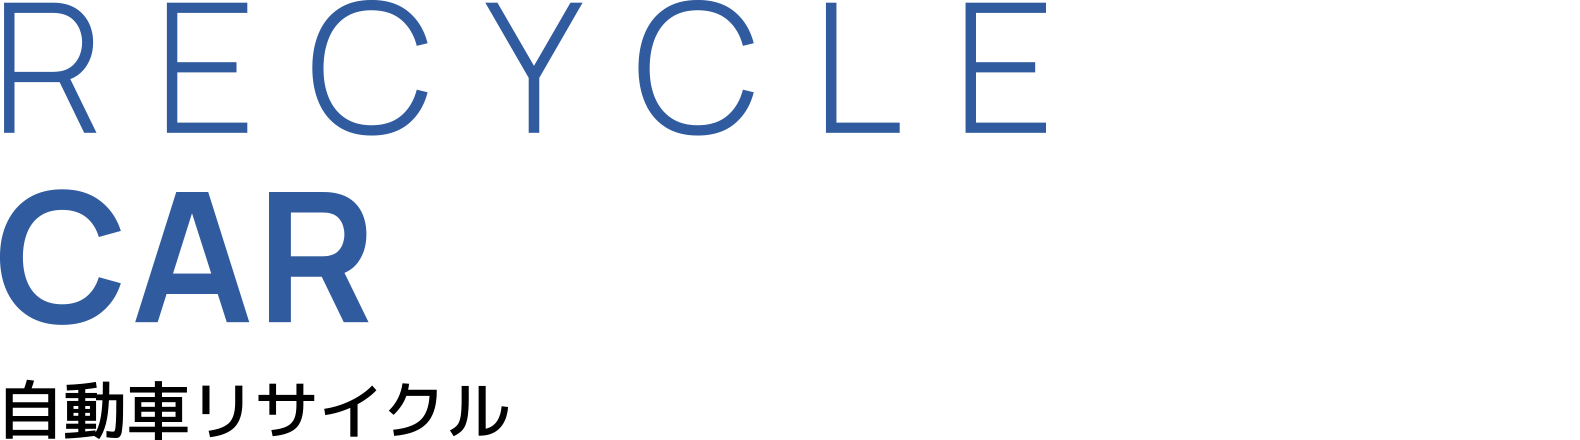 RECYCLE CAR 自動車リサイクル